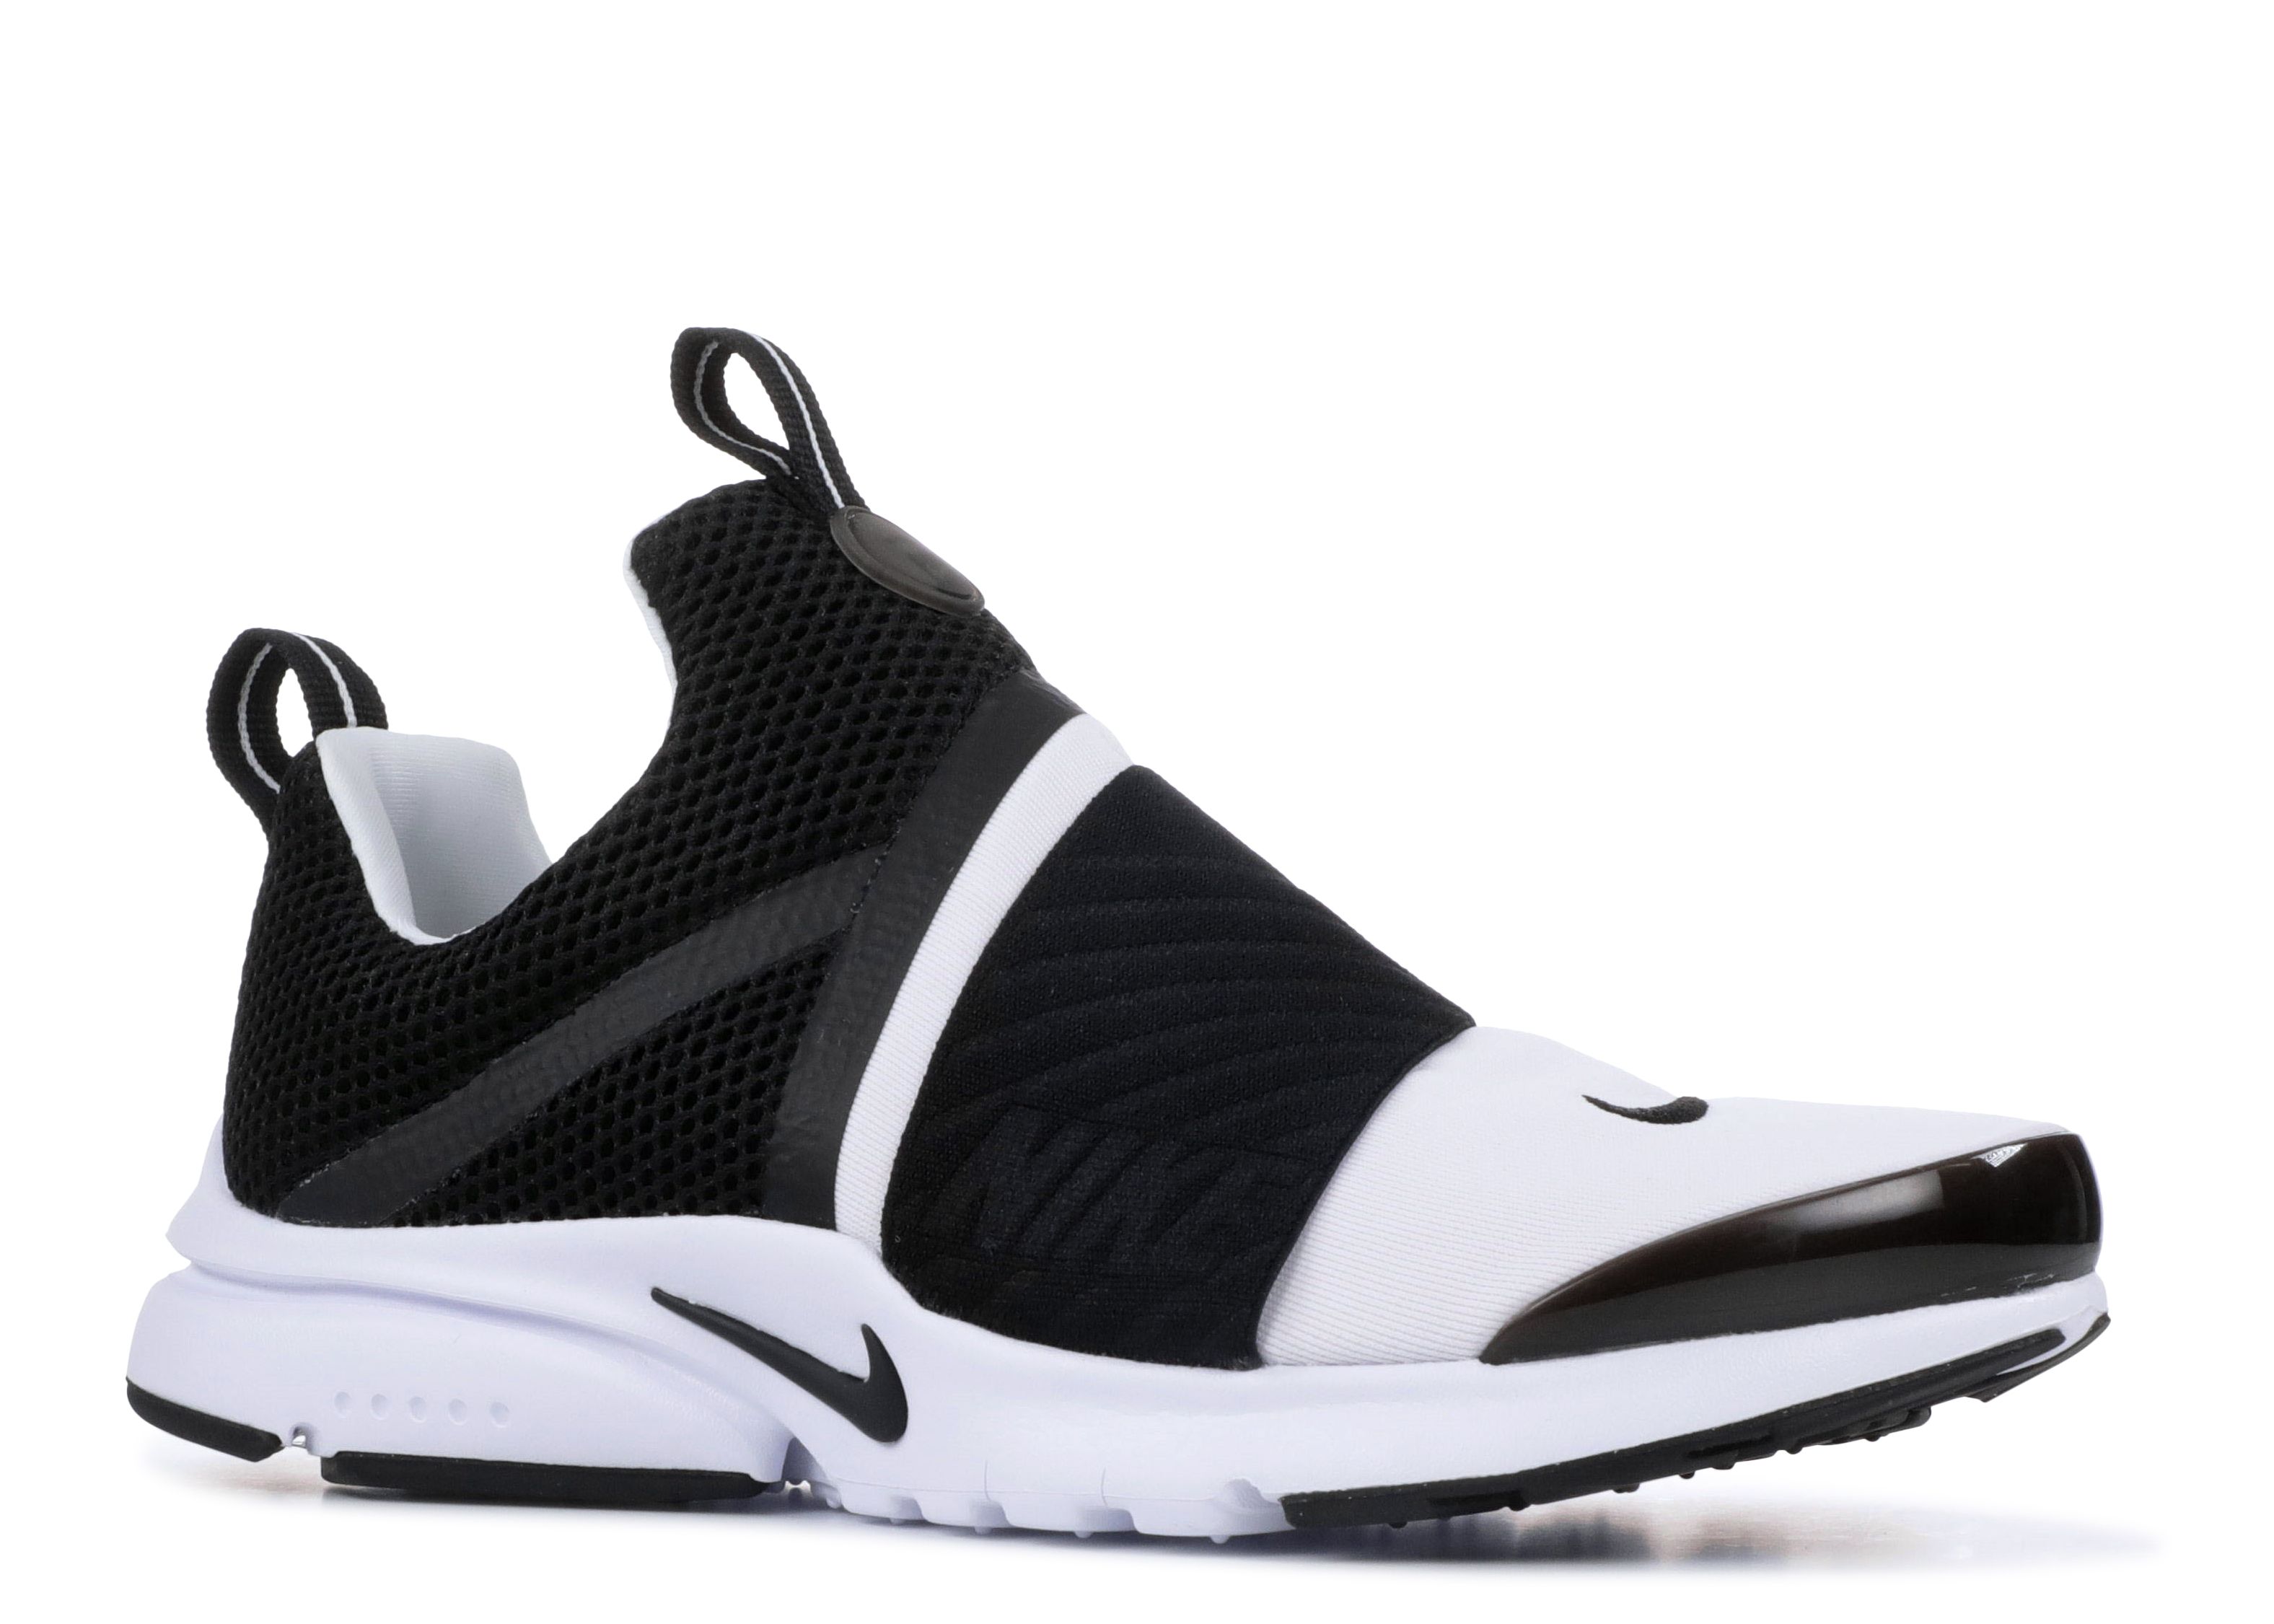 Presto Extreme GS 'White Black' - Nike 